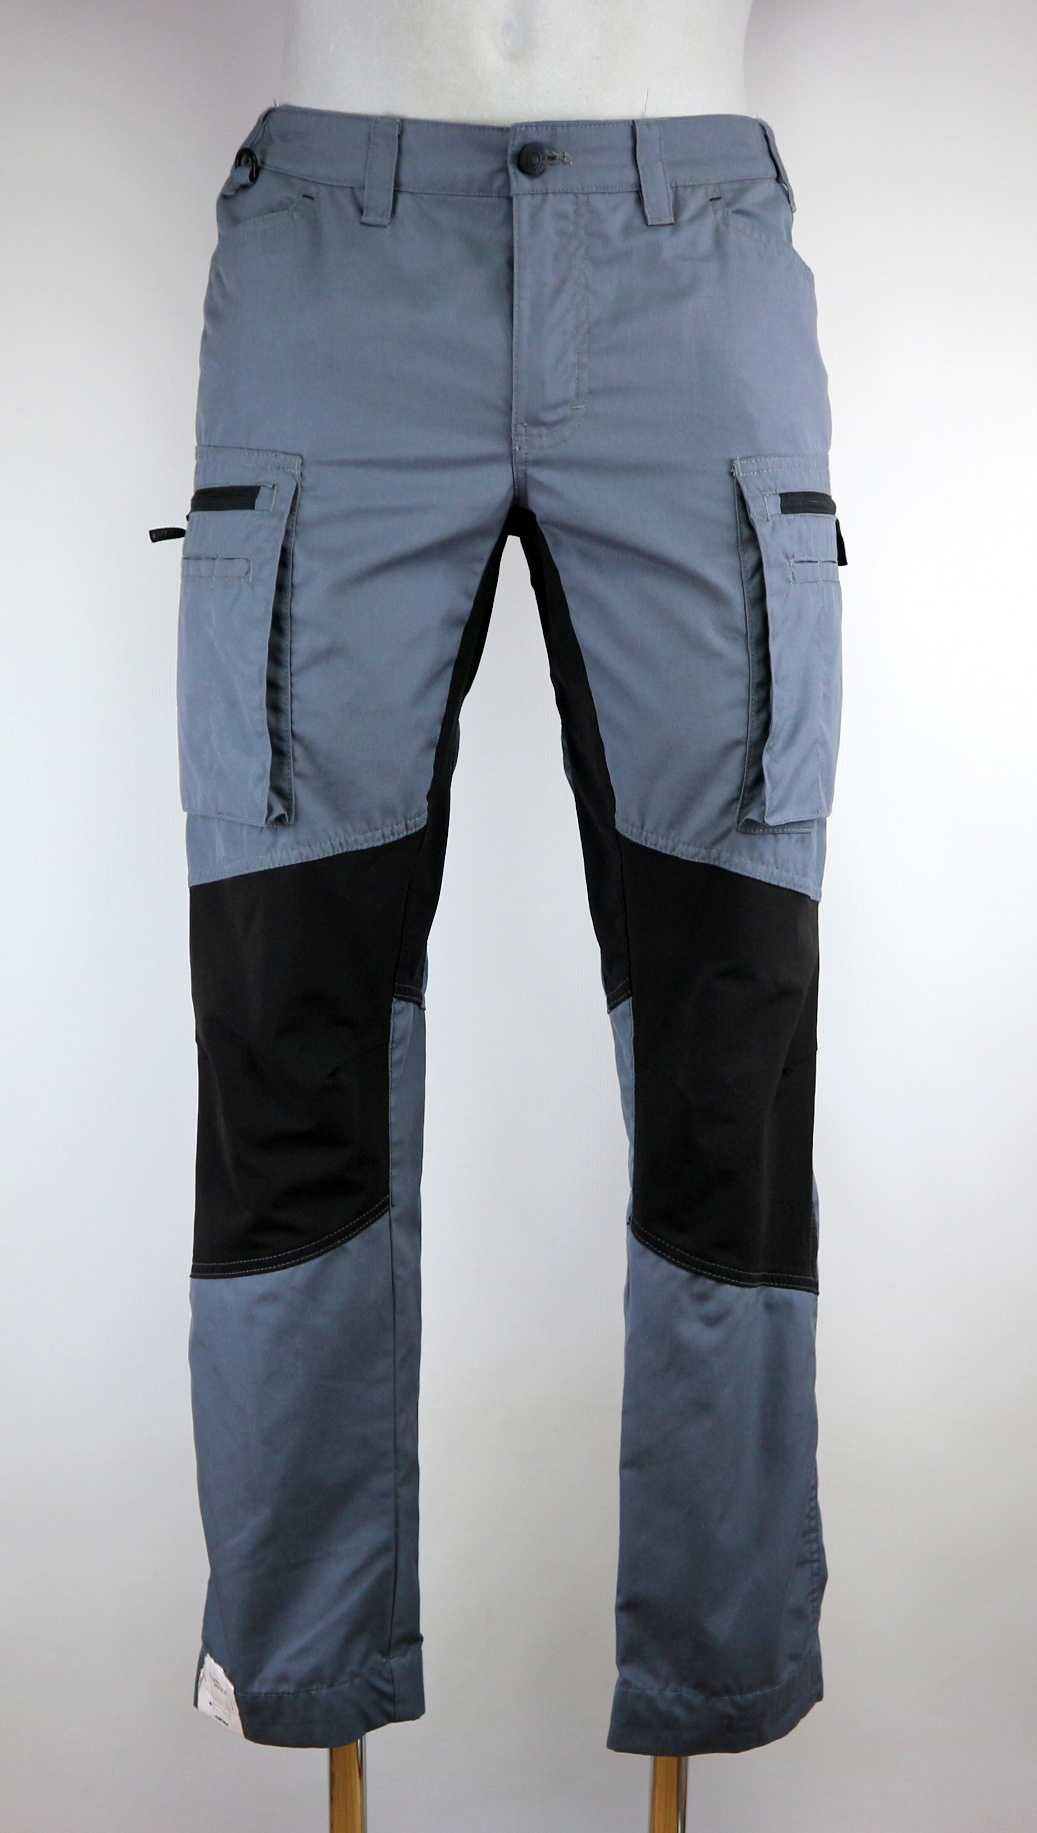 Blaklader damskie spodnie robocze ze stretchem 40 (L)